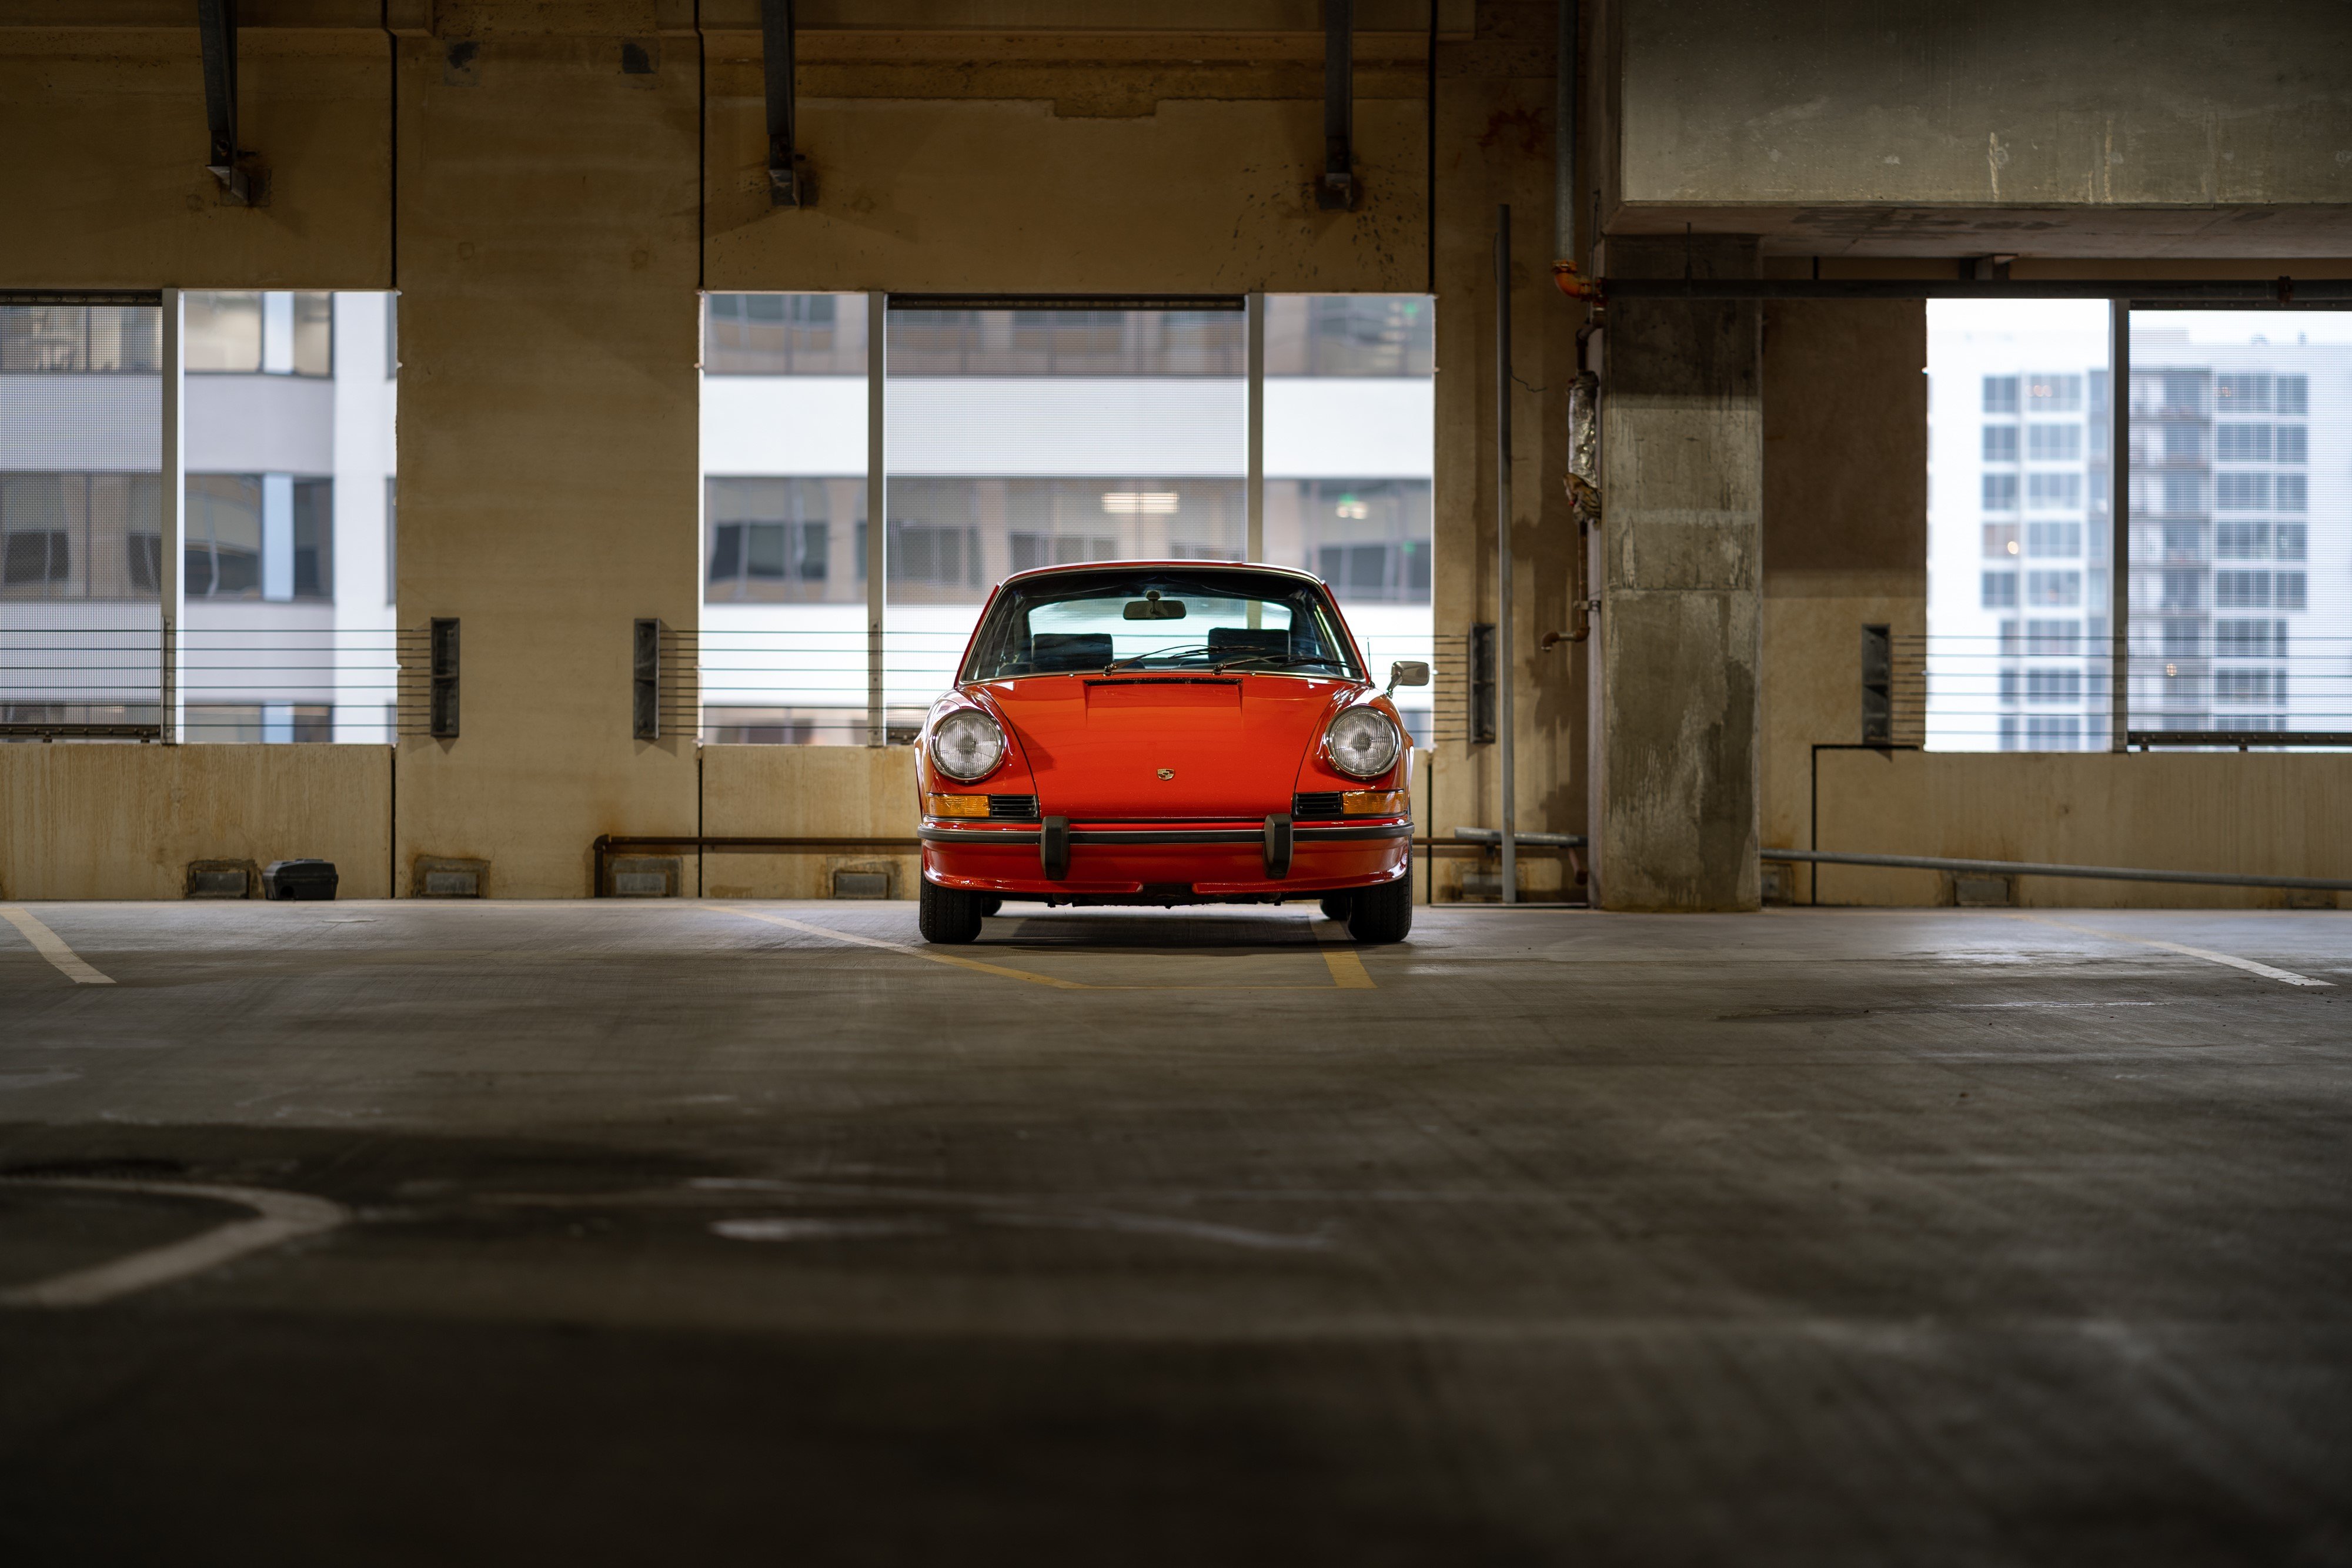 911S in a parking garage in Austin, TX.